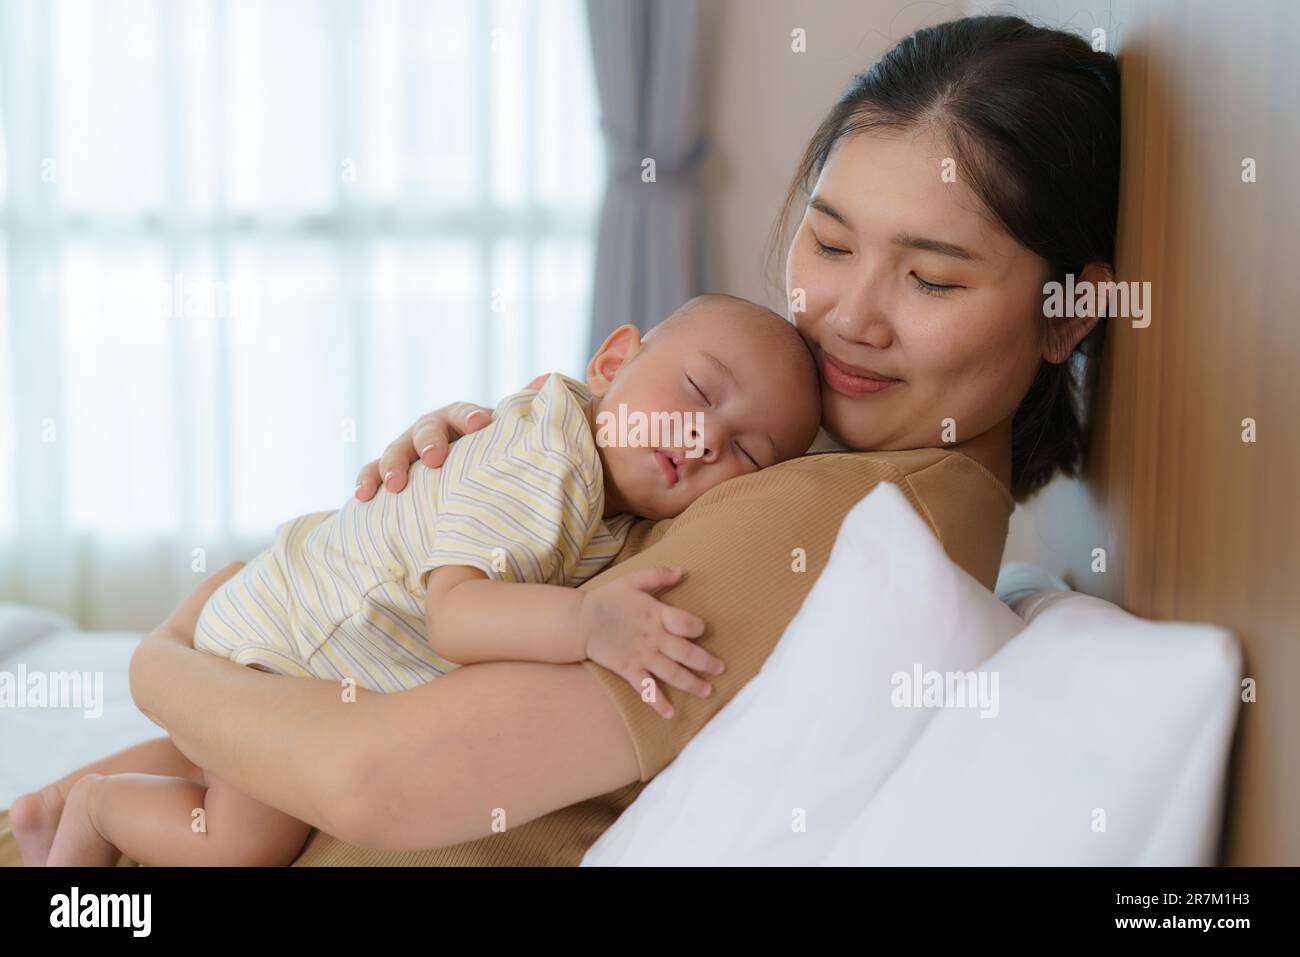 La mère asiatique a embrassé son jeune fils pour qu'elle puisse avoir un bon sommeil dans la chambre à la maison, représente l'amour et la famille Banque D'Images